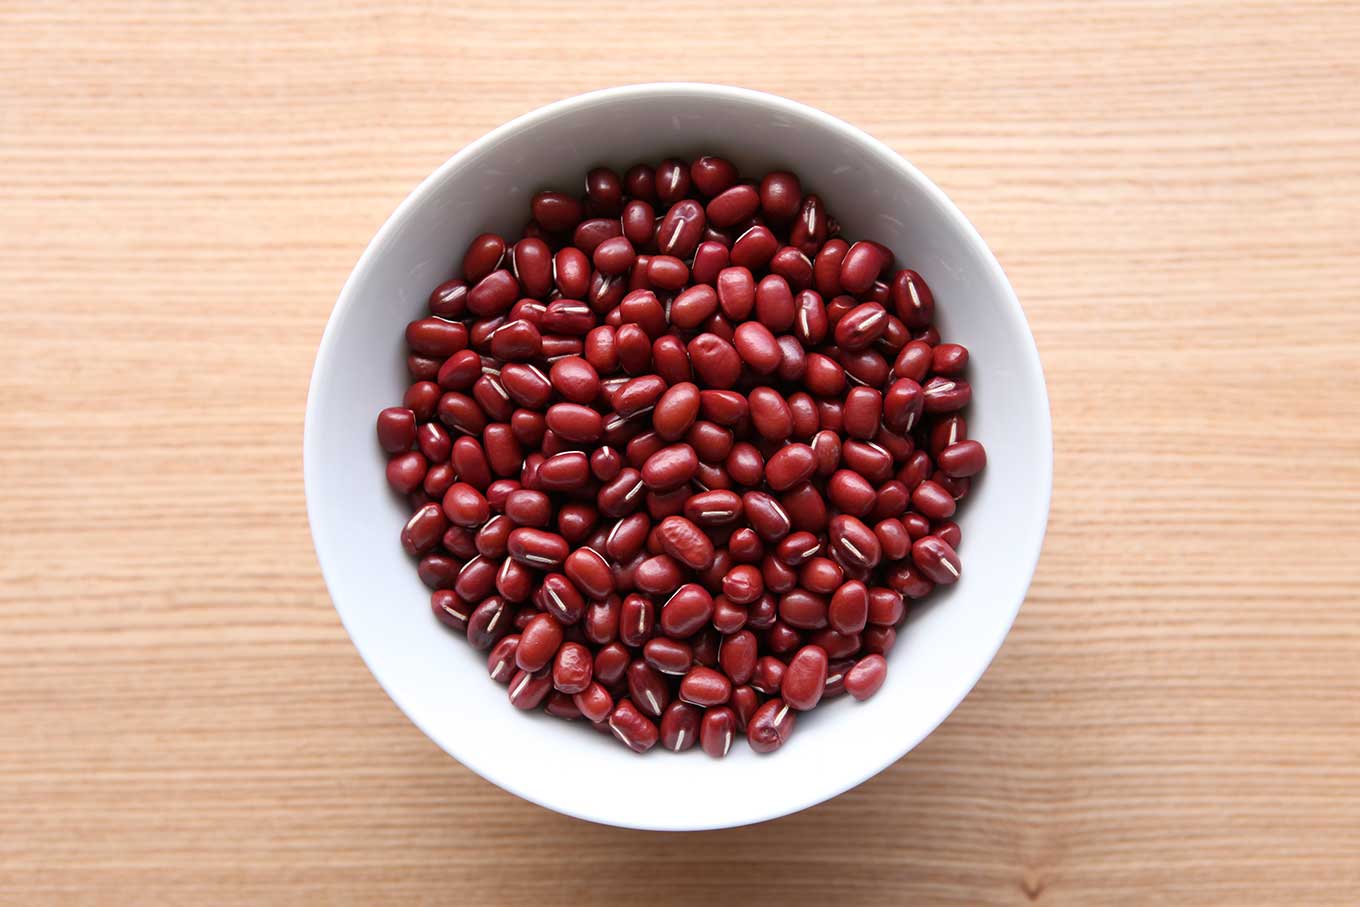 紅豆 (Adzuki bean) 的五大功效及食用禁忌